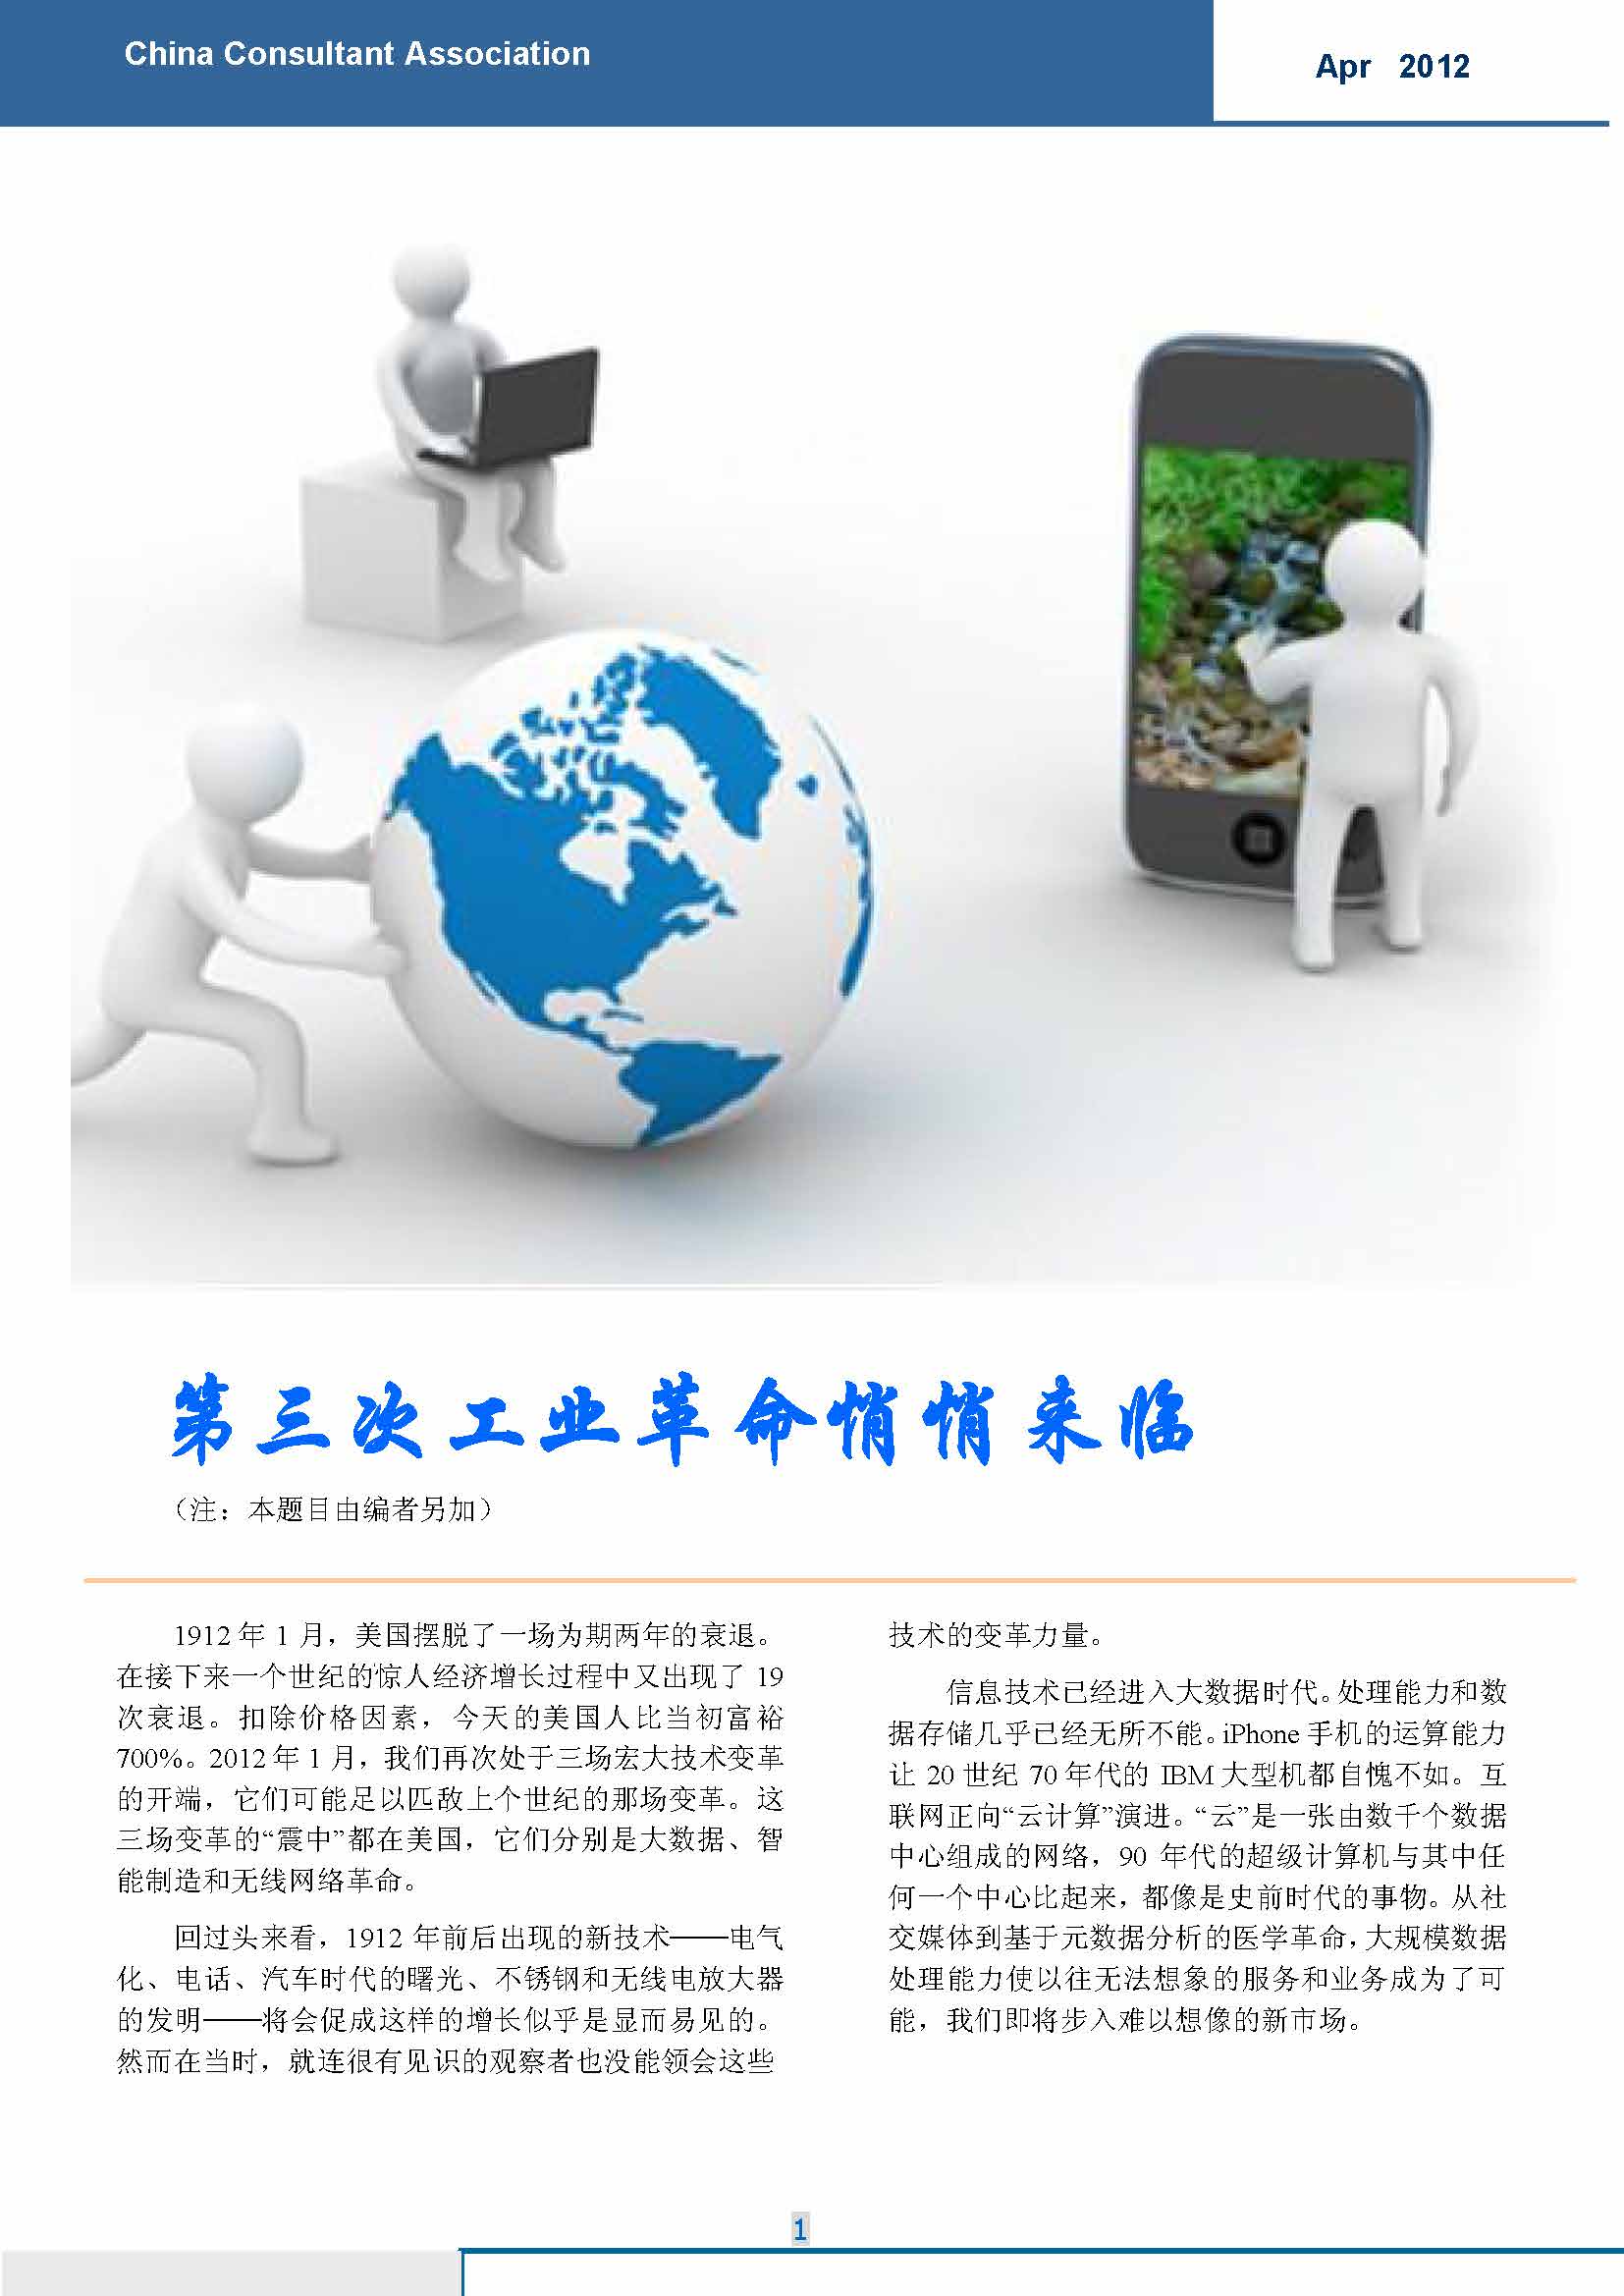 6中国科技咨询协会国际快讯（第六期）_页面_03.jpg